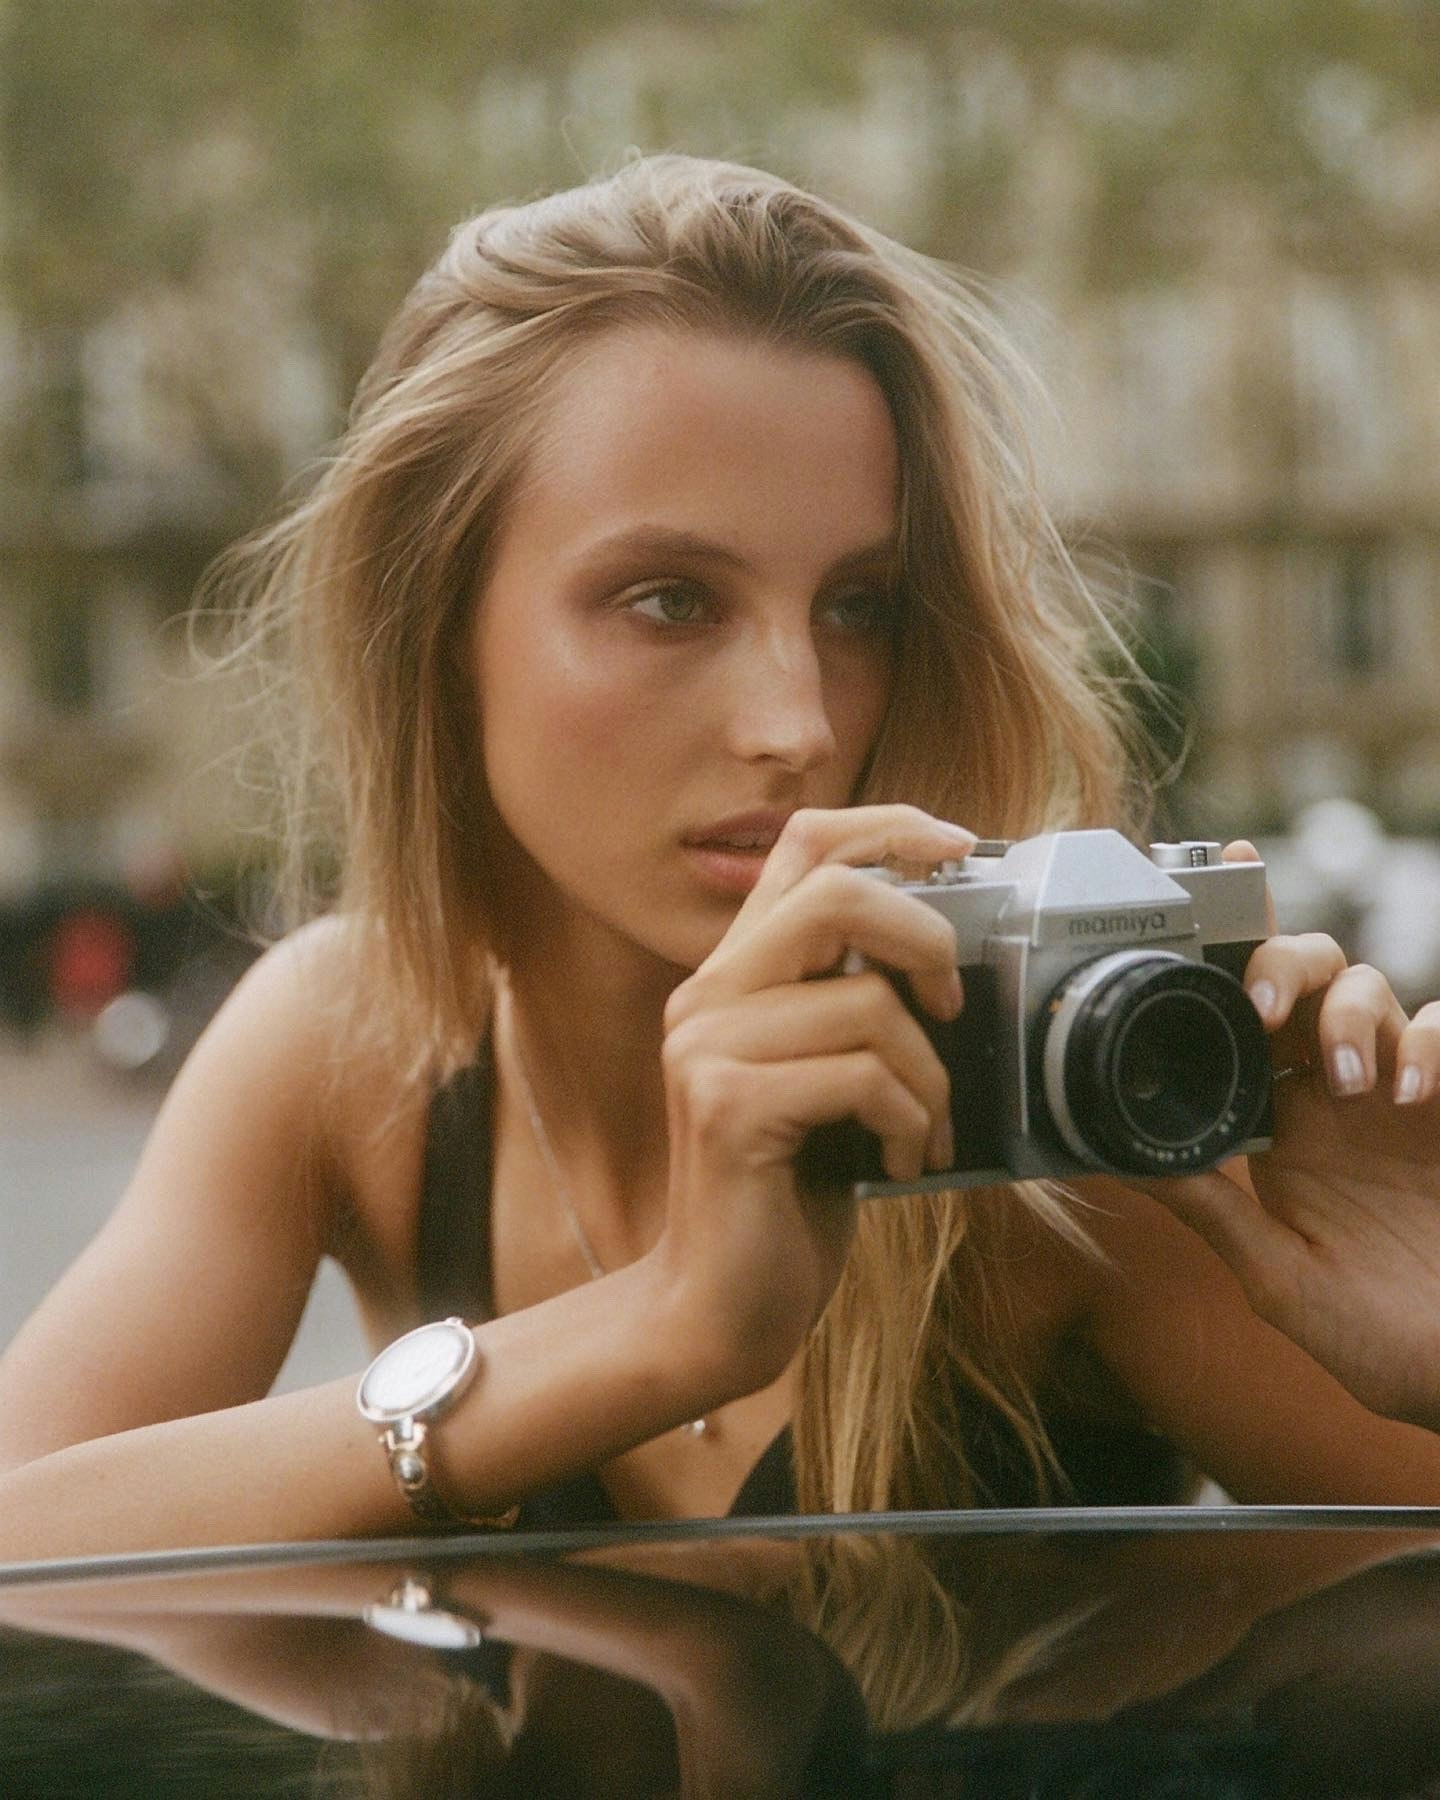 An image of Alexandra Mathieu